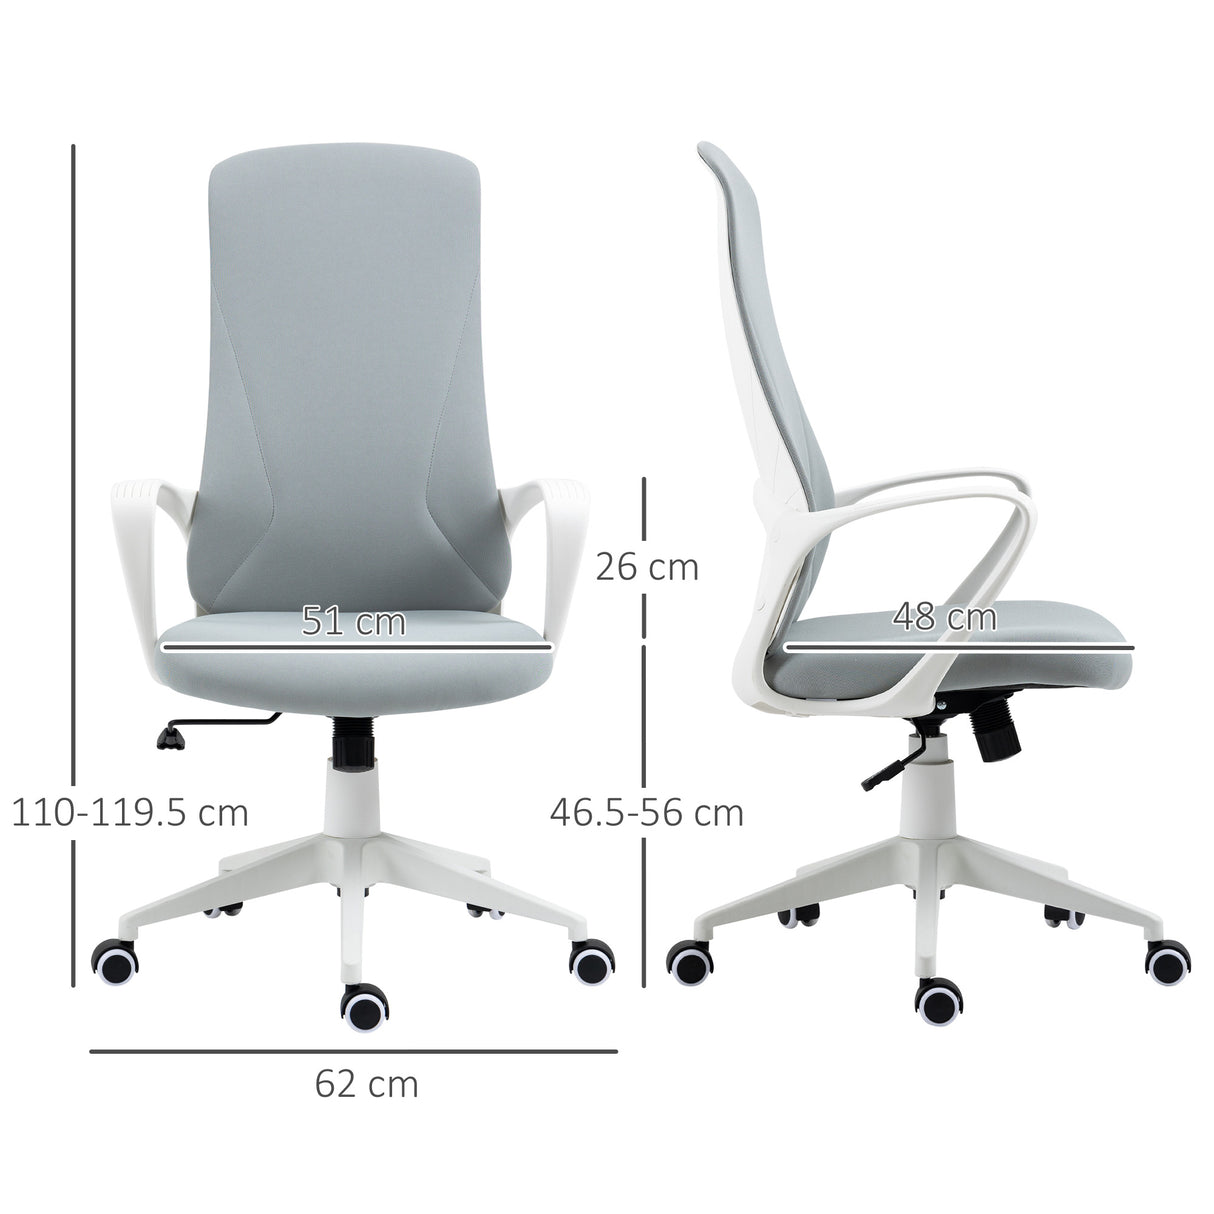 immagine-3-easycomfort-easycomfort-sedia-da-ufficio-ergonomica-con-altezza-regolabile-e-funzione-di-inclinazione-62x56x110-119-5-cm